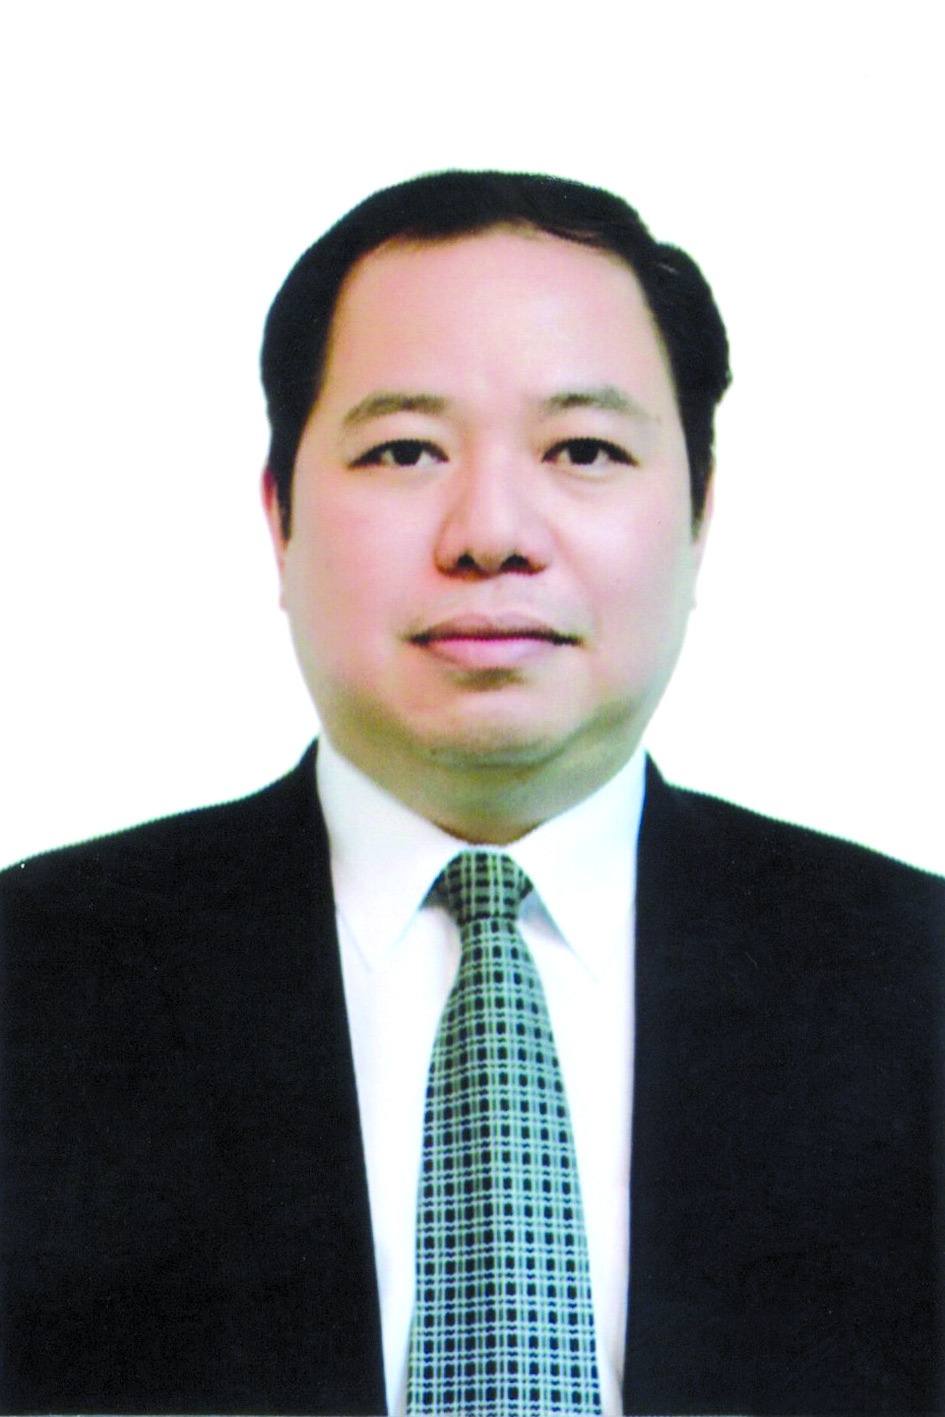 Chương trình hành động của ông Trần Thọ Hiển, ứng cử viên đại biểu HĐND TP Hà Nội nhiệm kỳ 2021 - 2026 - Ảnh 1